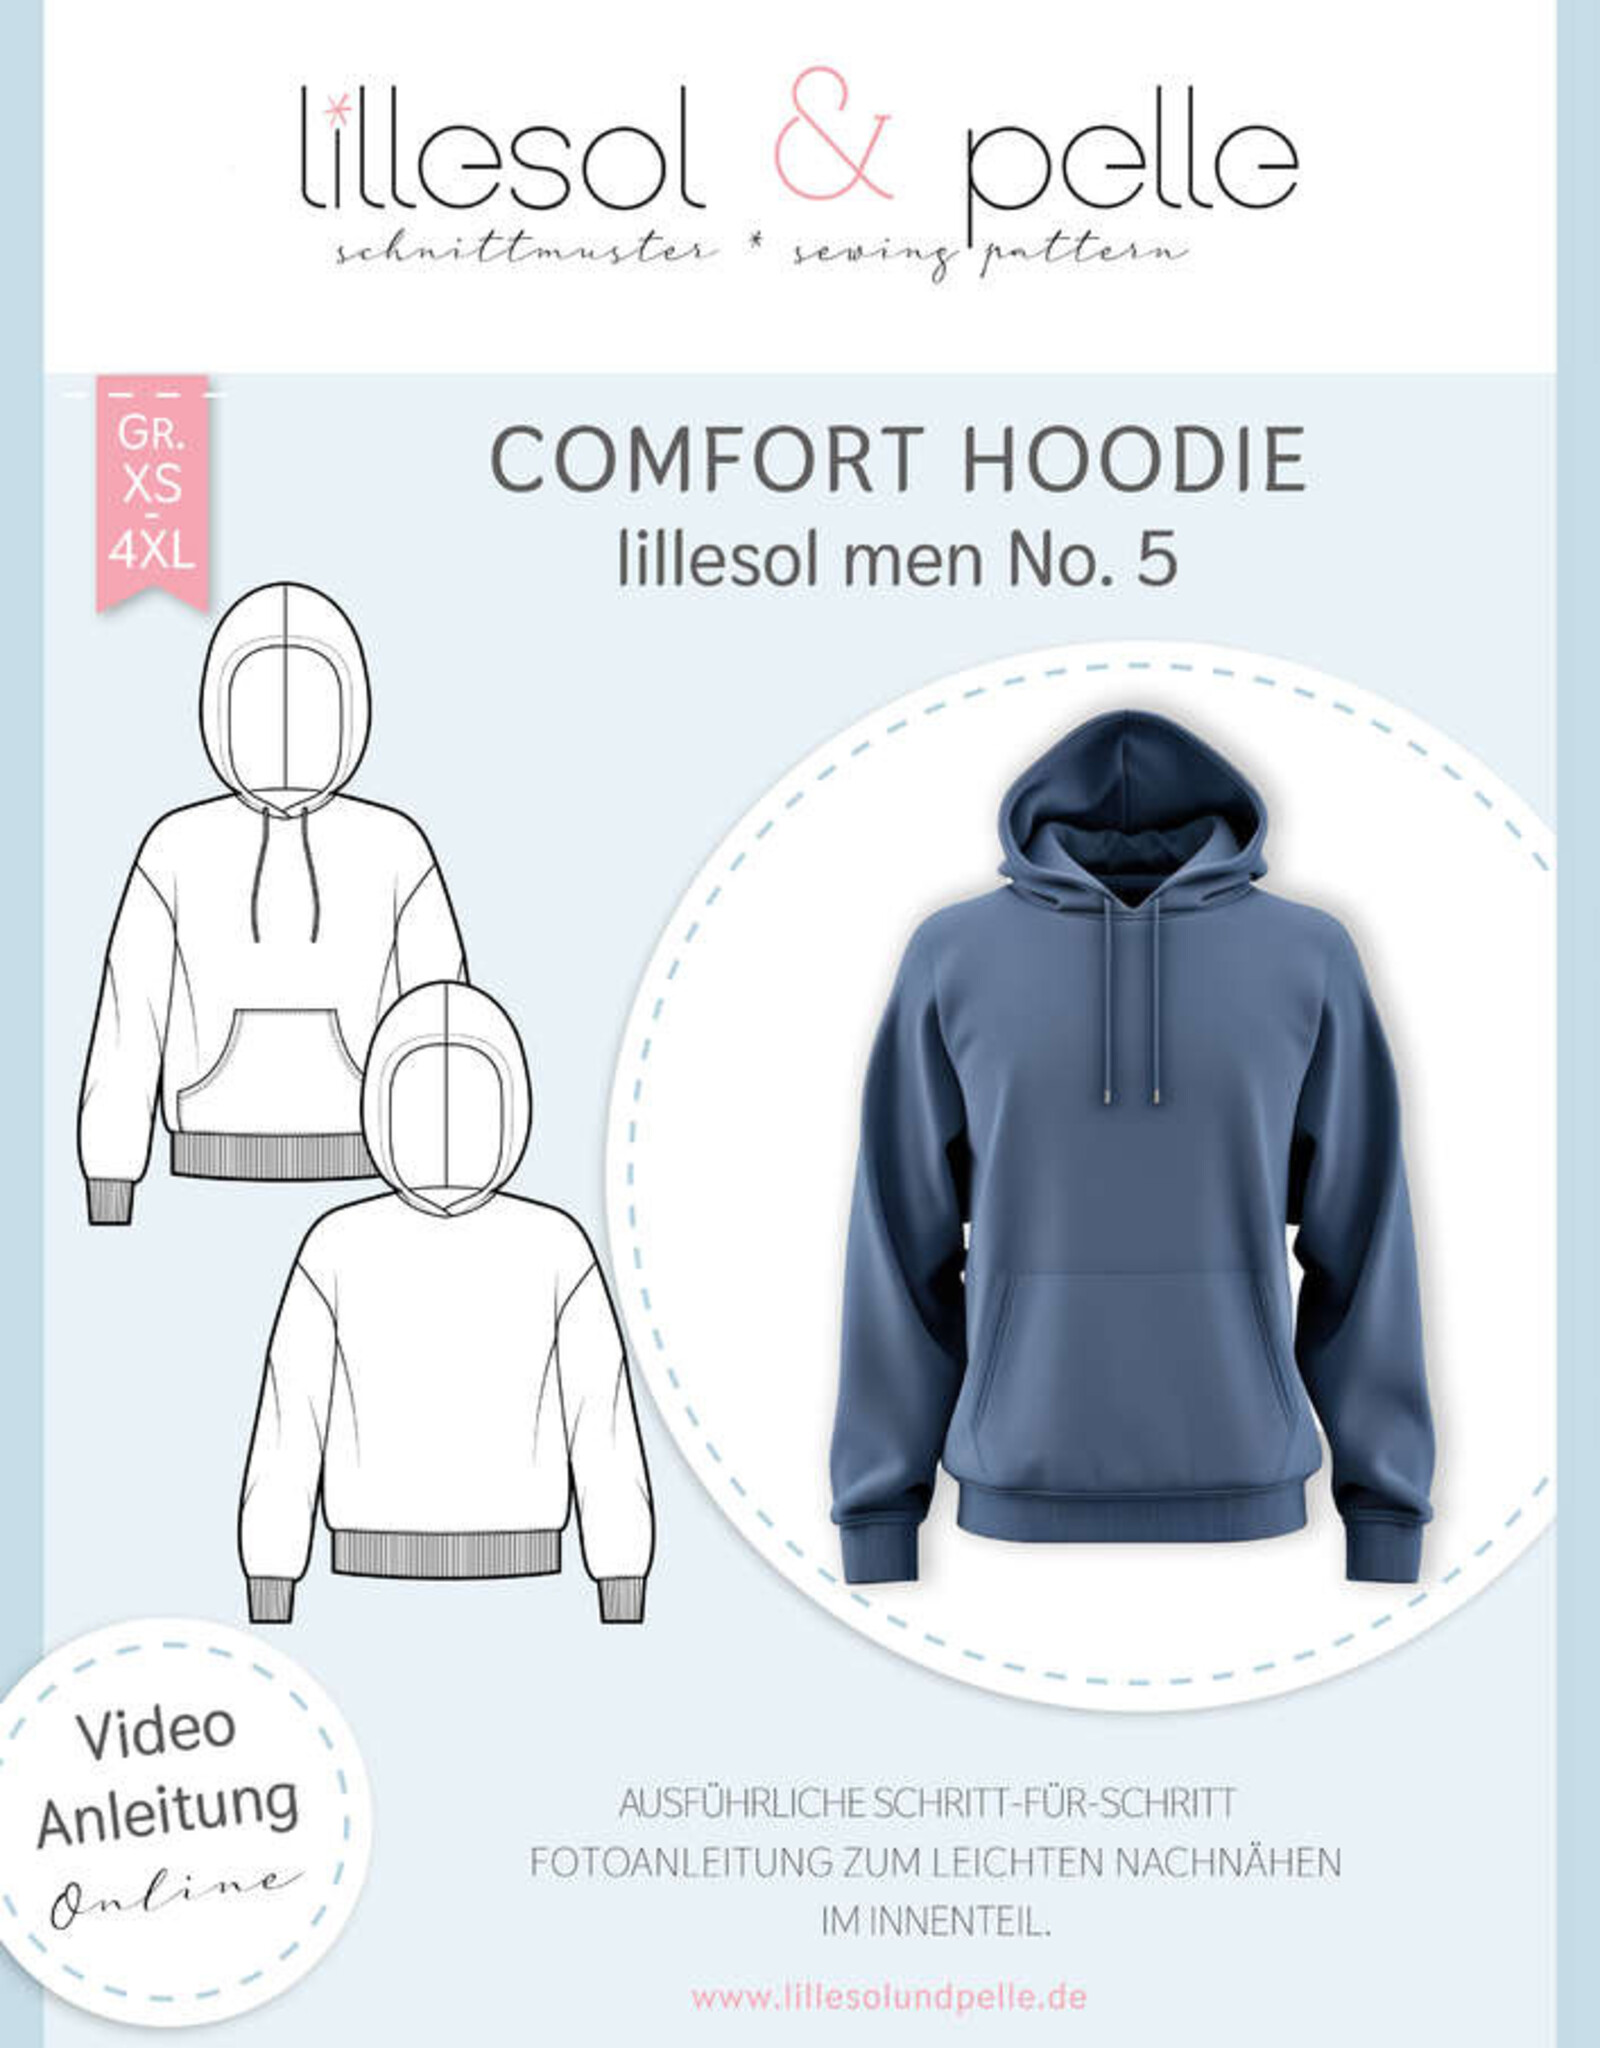 Comfort hoodie mannen no 5